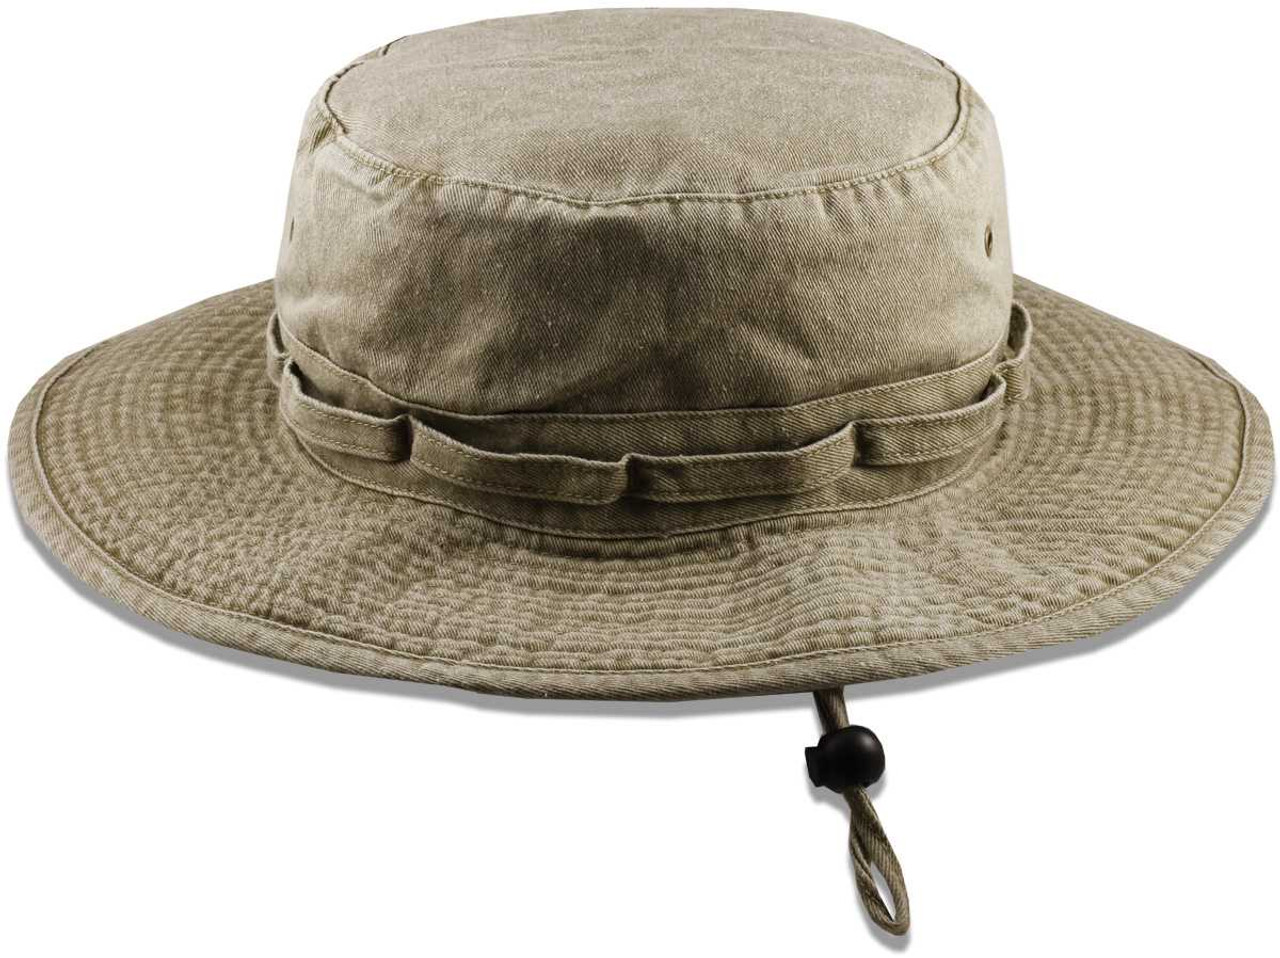  Men's Sun Hats - Men's Sun Hats / Men's Hats & Caps